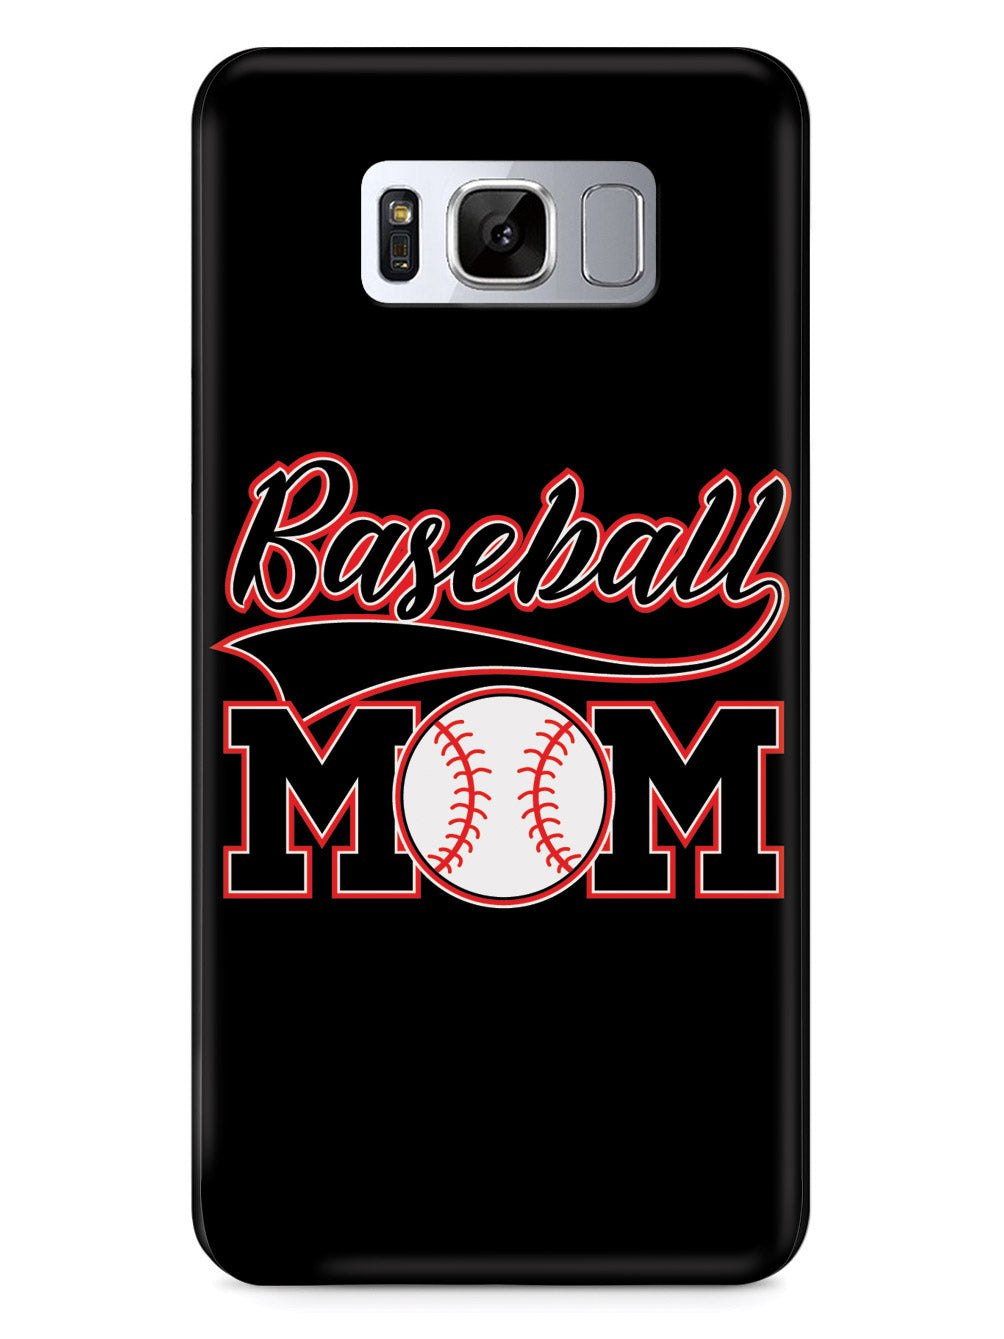 Baseball Mom - Black Case